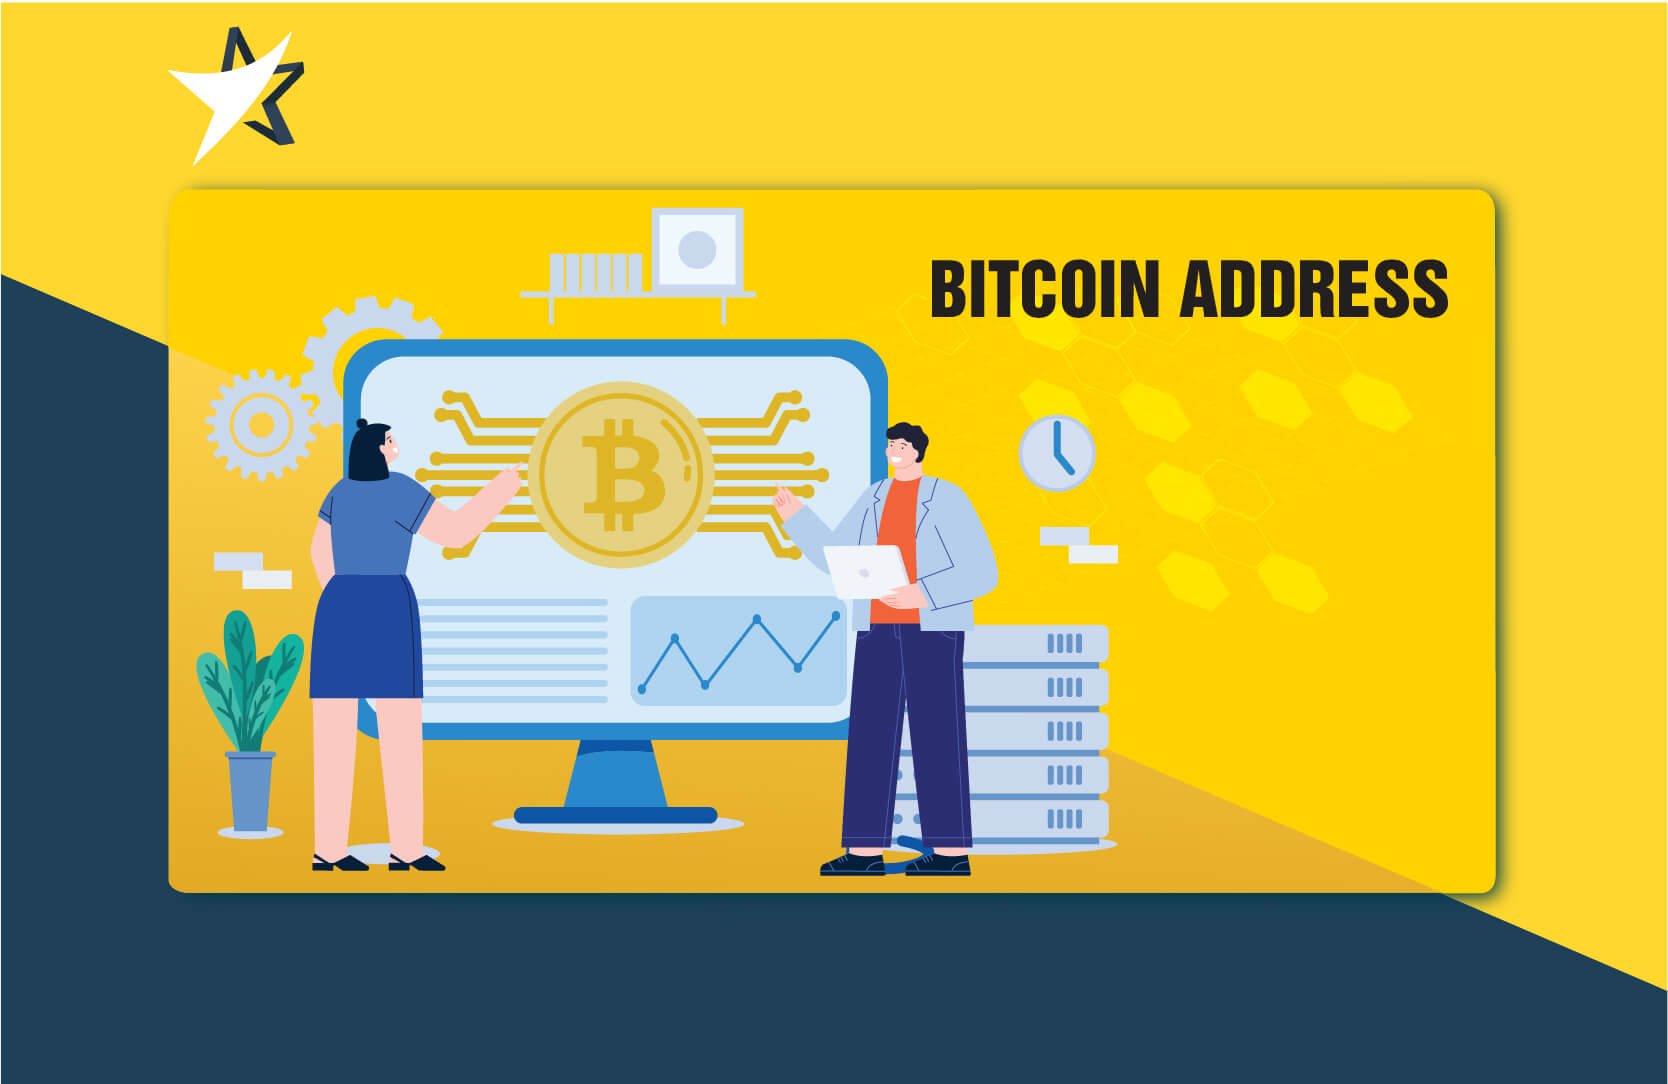 keressen bitcoin készpénzes alkalmazást legjobb hely a bitcoin készpénzzel való kereskedésre